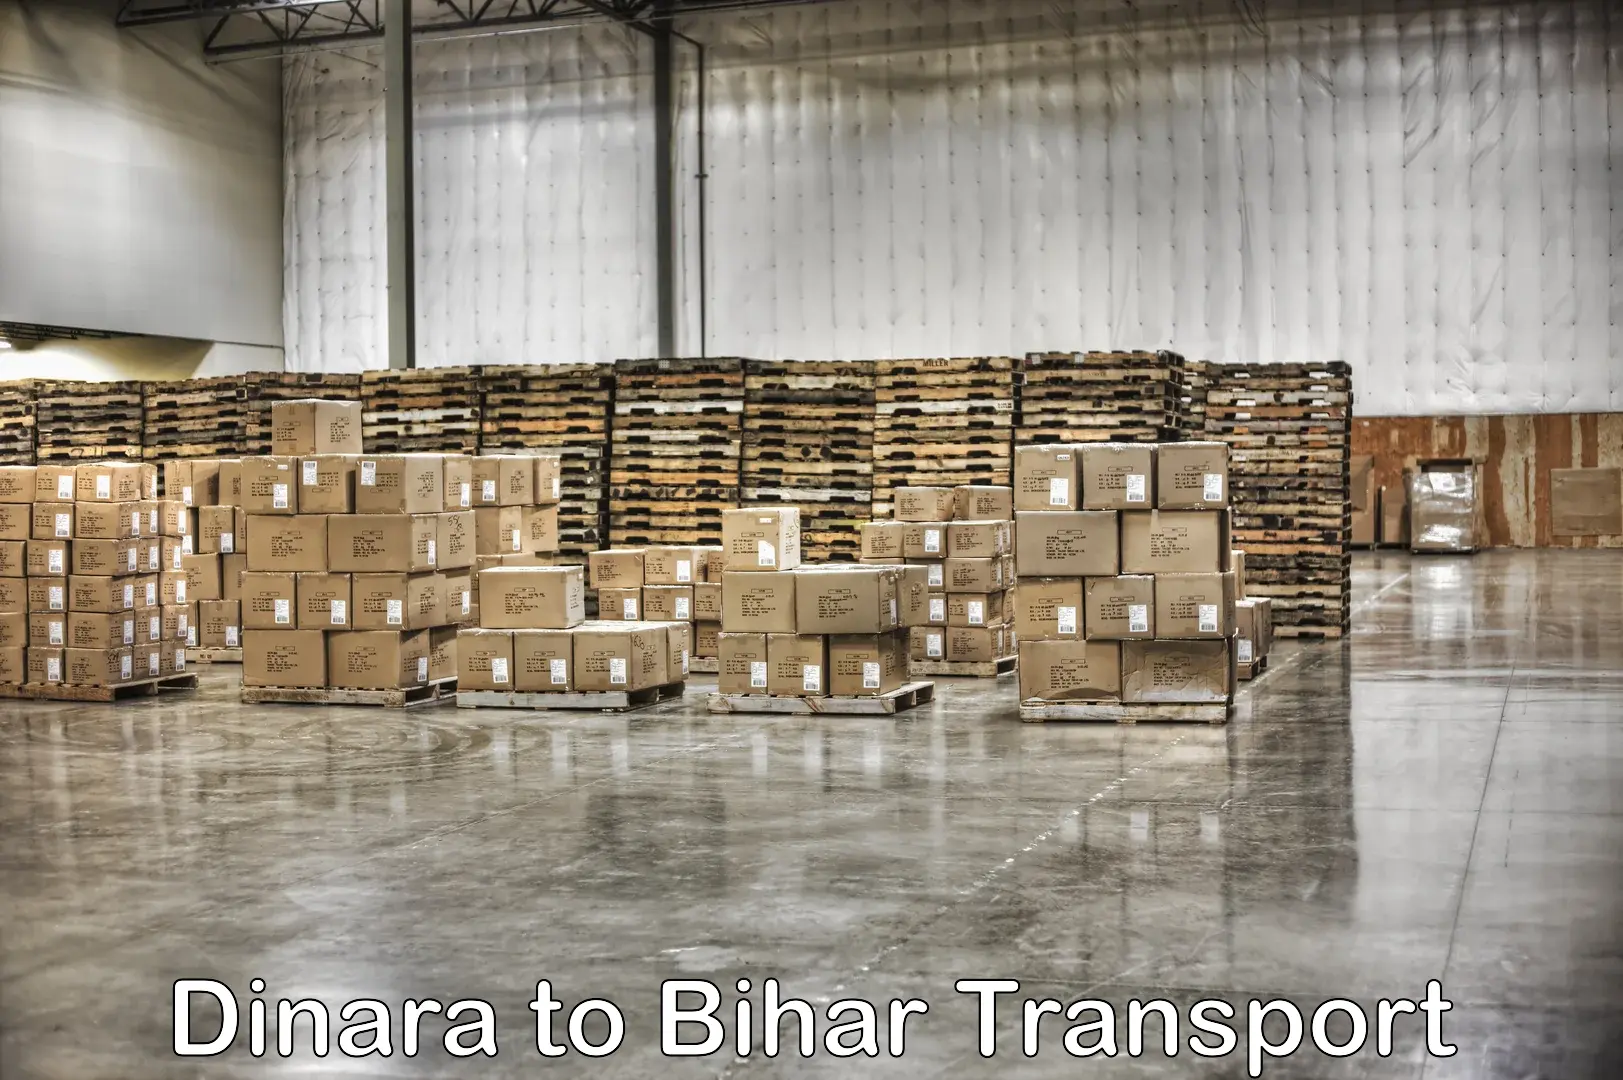 Shipping partner Dinara to Marhowrah